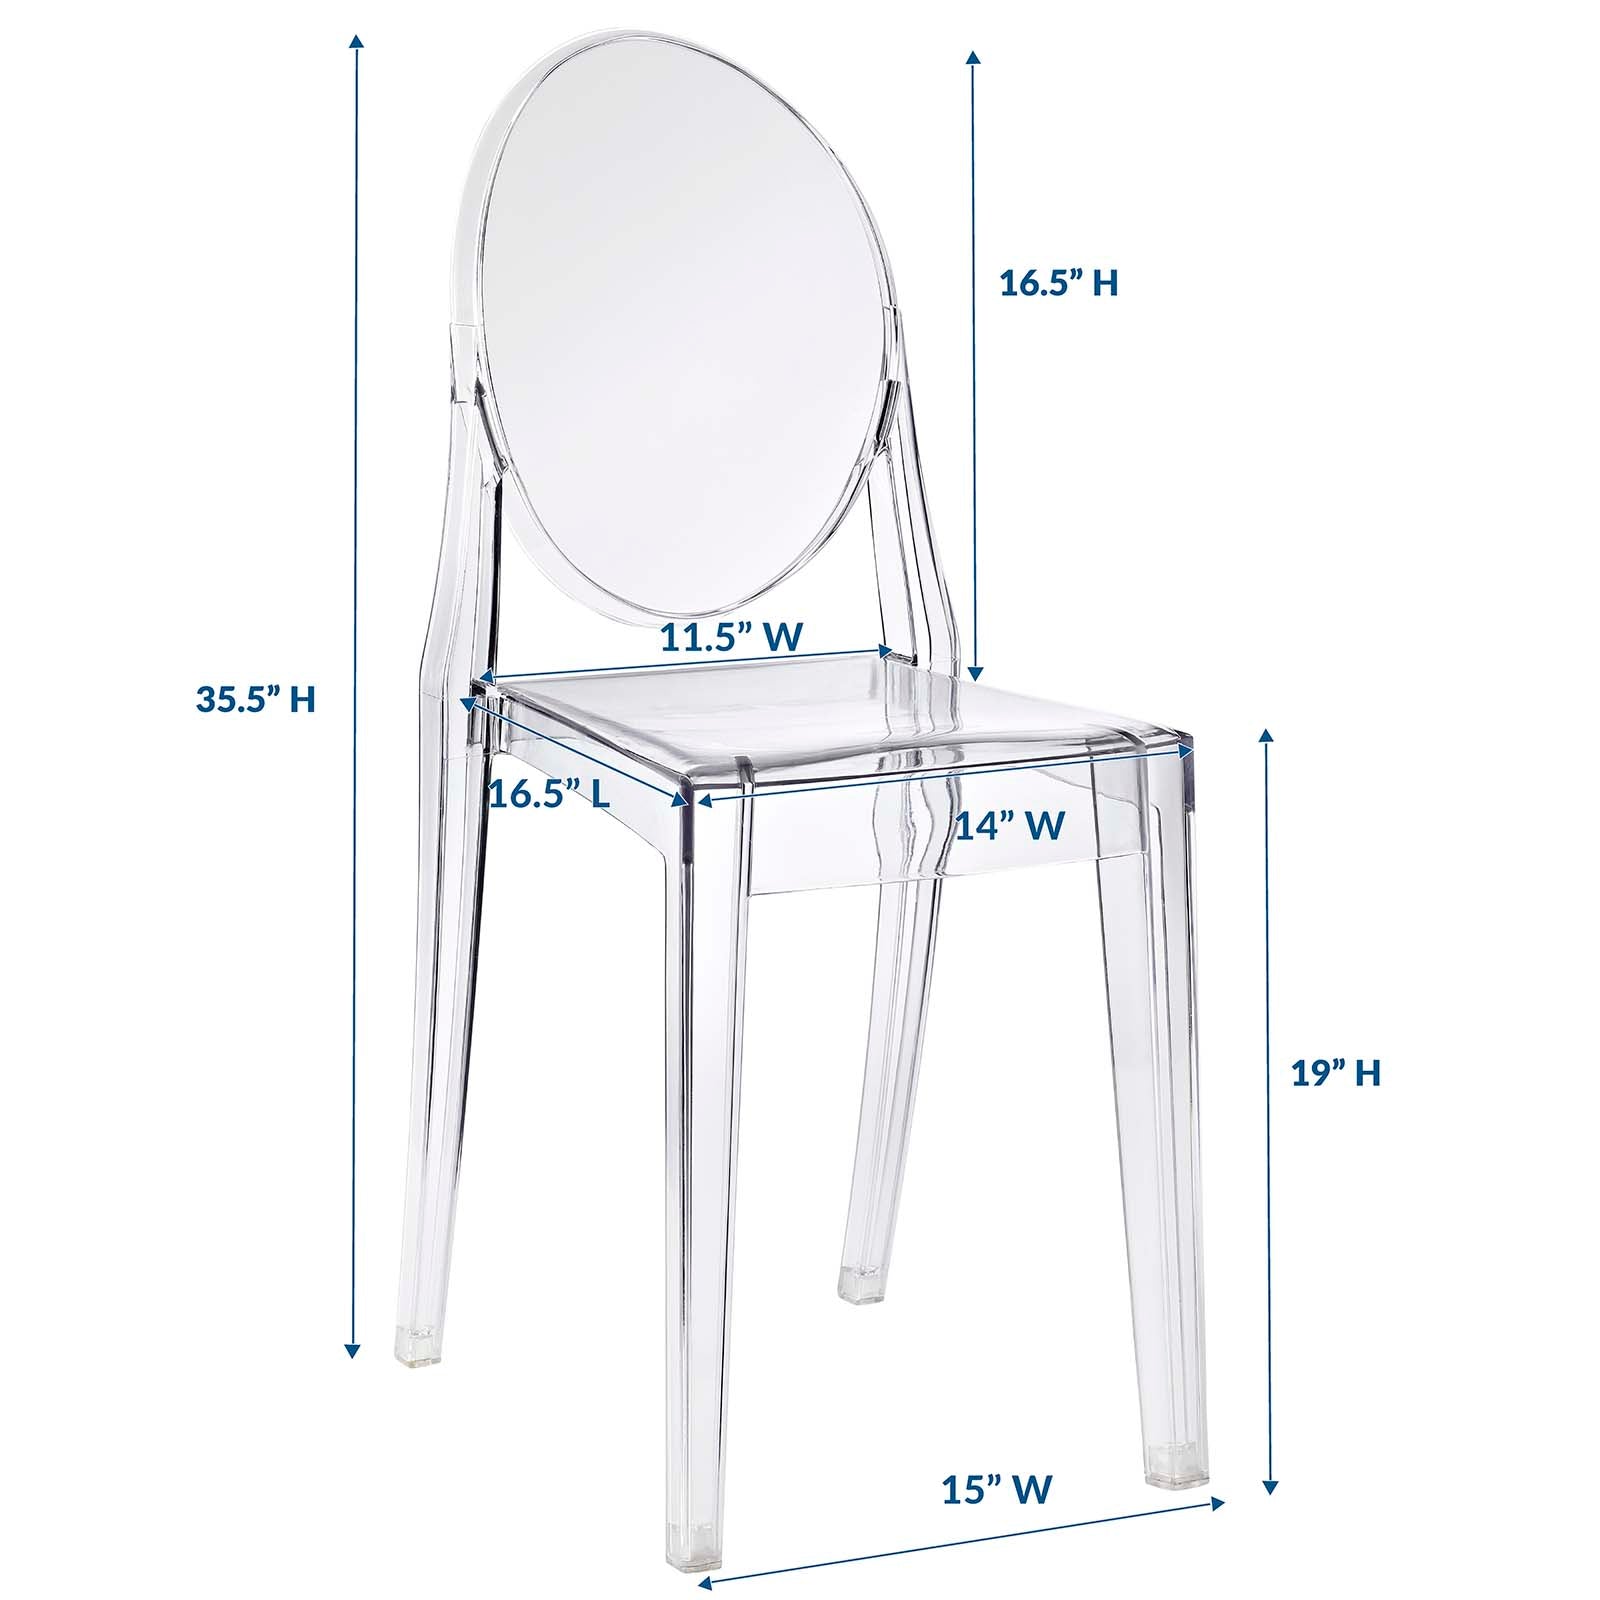 Casper Dining Side Chair - East Shore Modern Home Furnishings